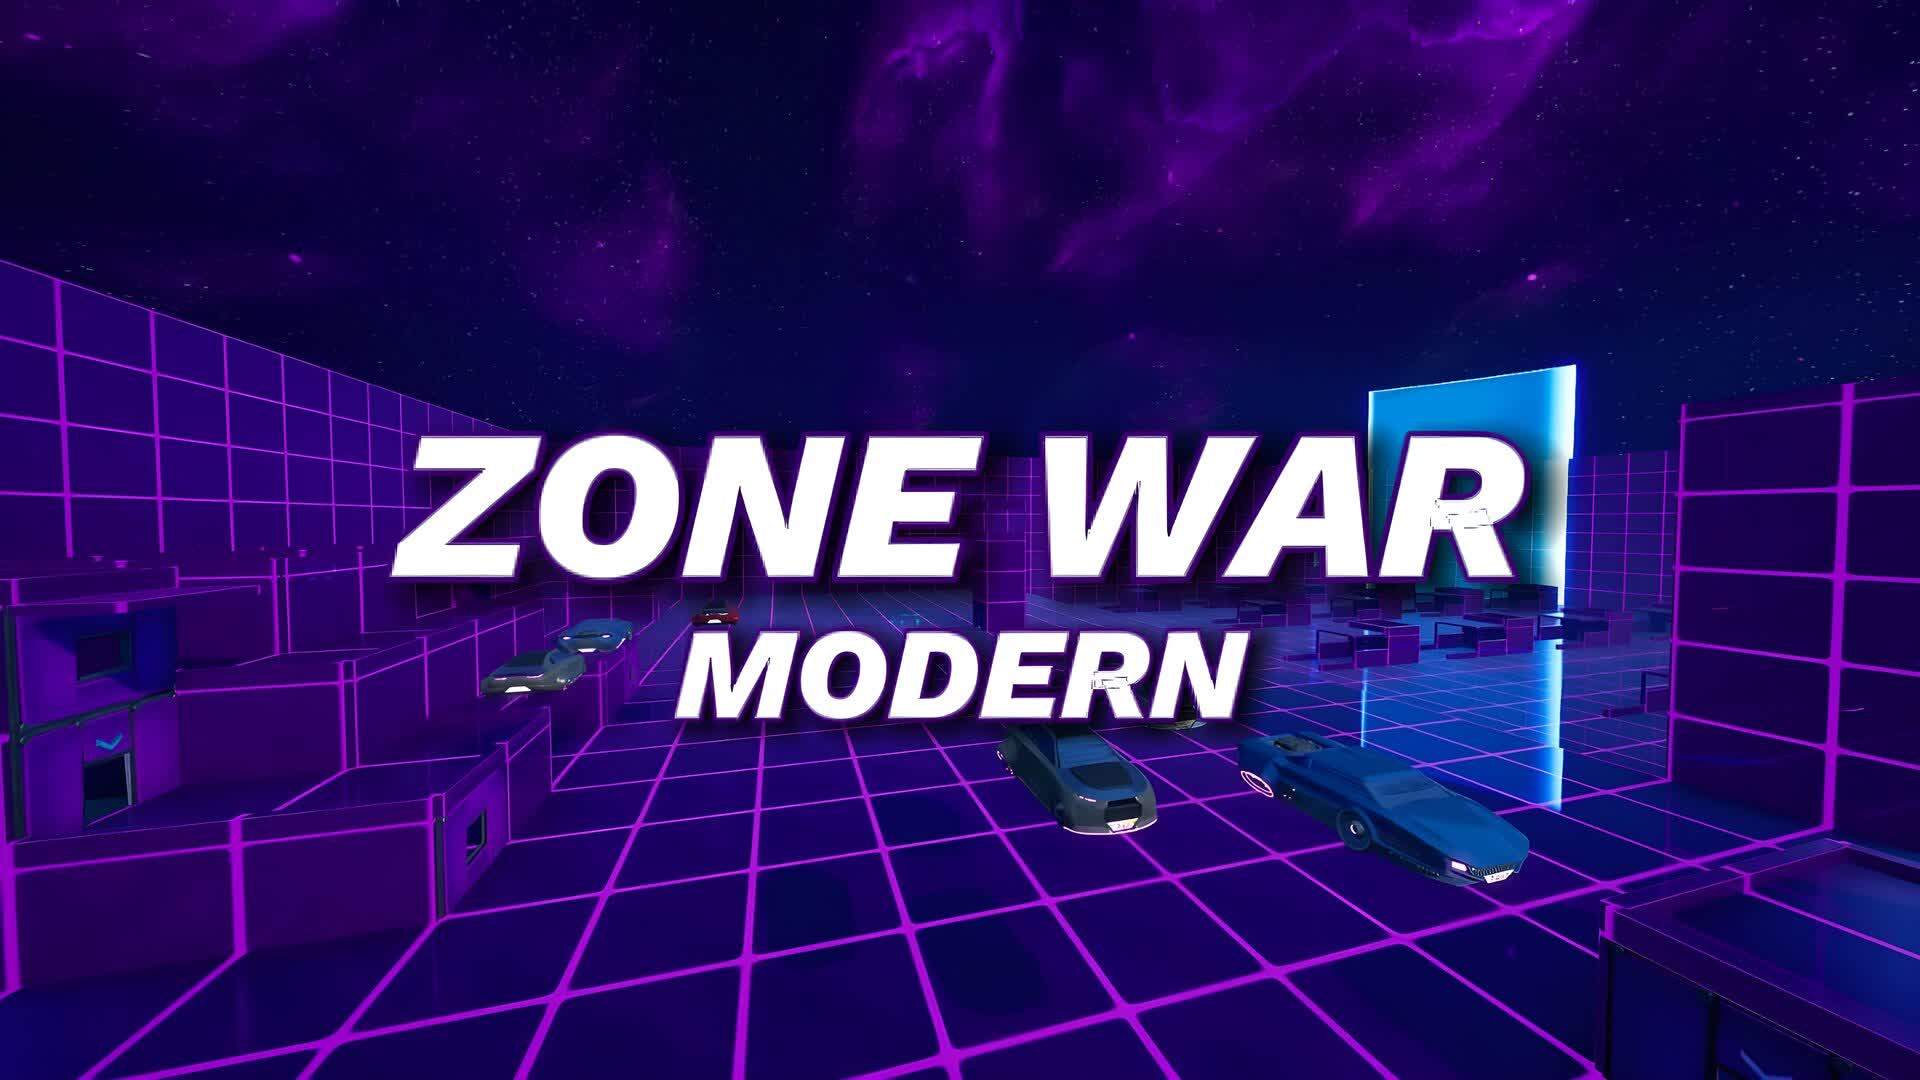 MODERN ZONE WARS